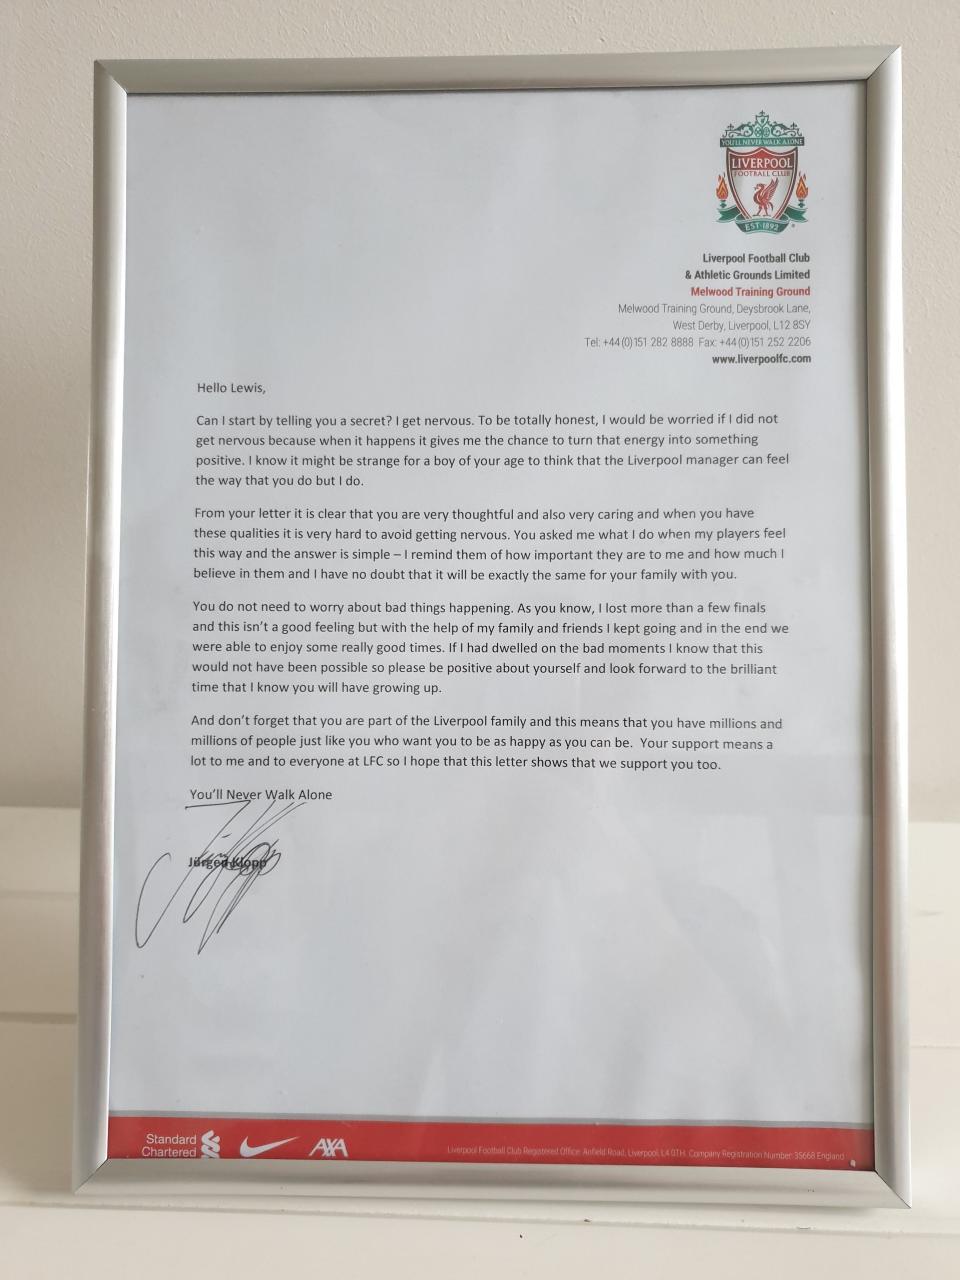 The framed letter from Jurgen Klopp to Lewis